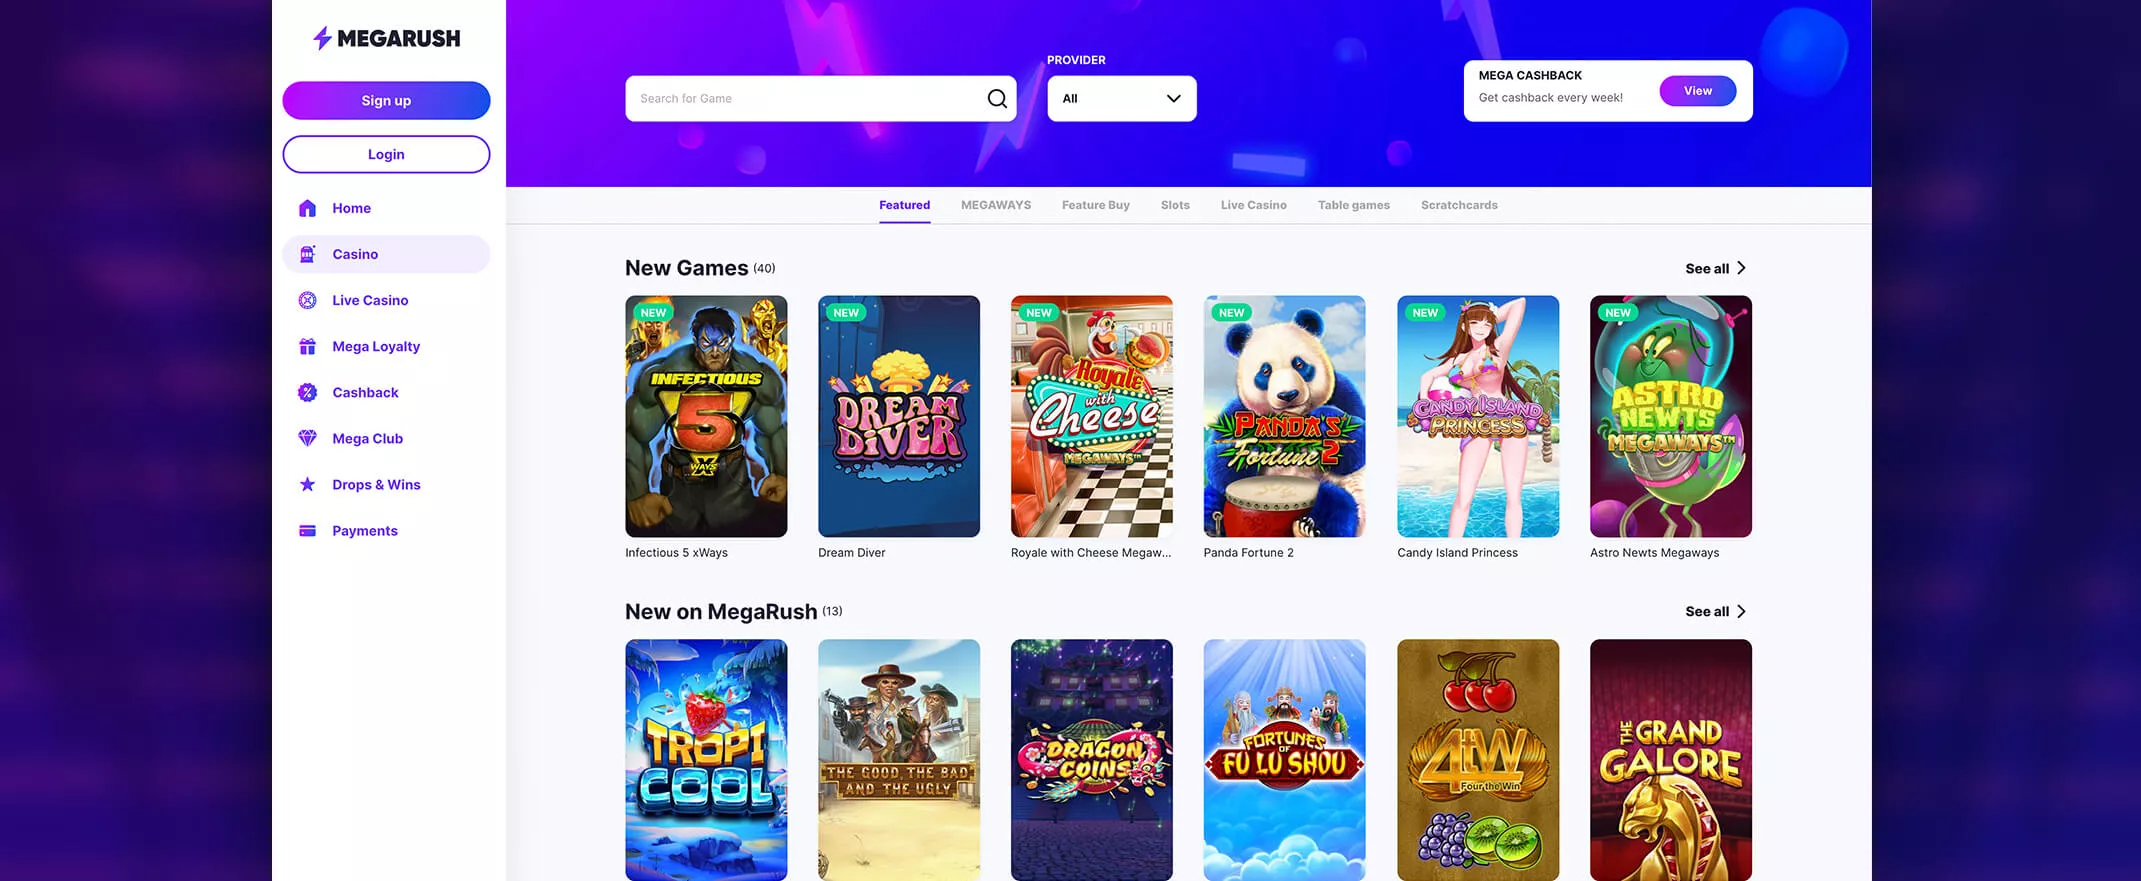 MegaRush casino screenshot of the games